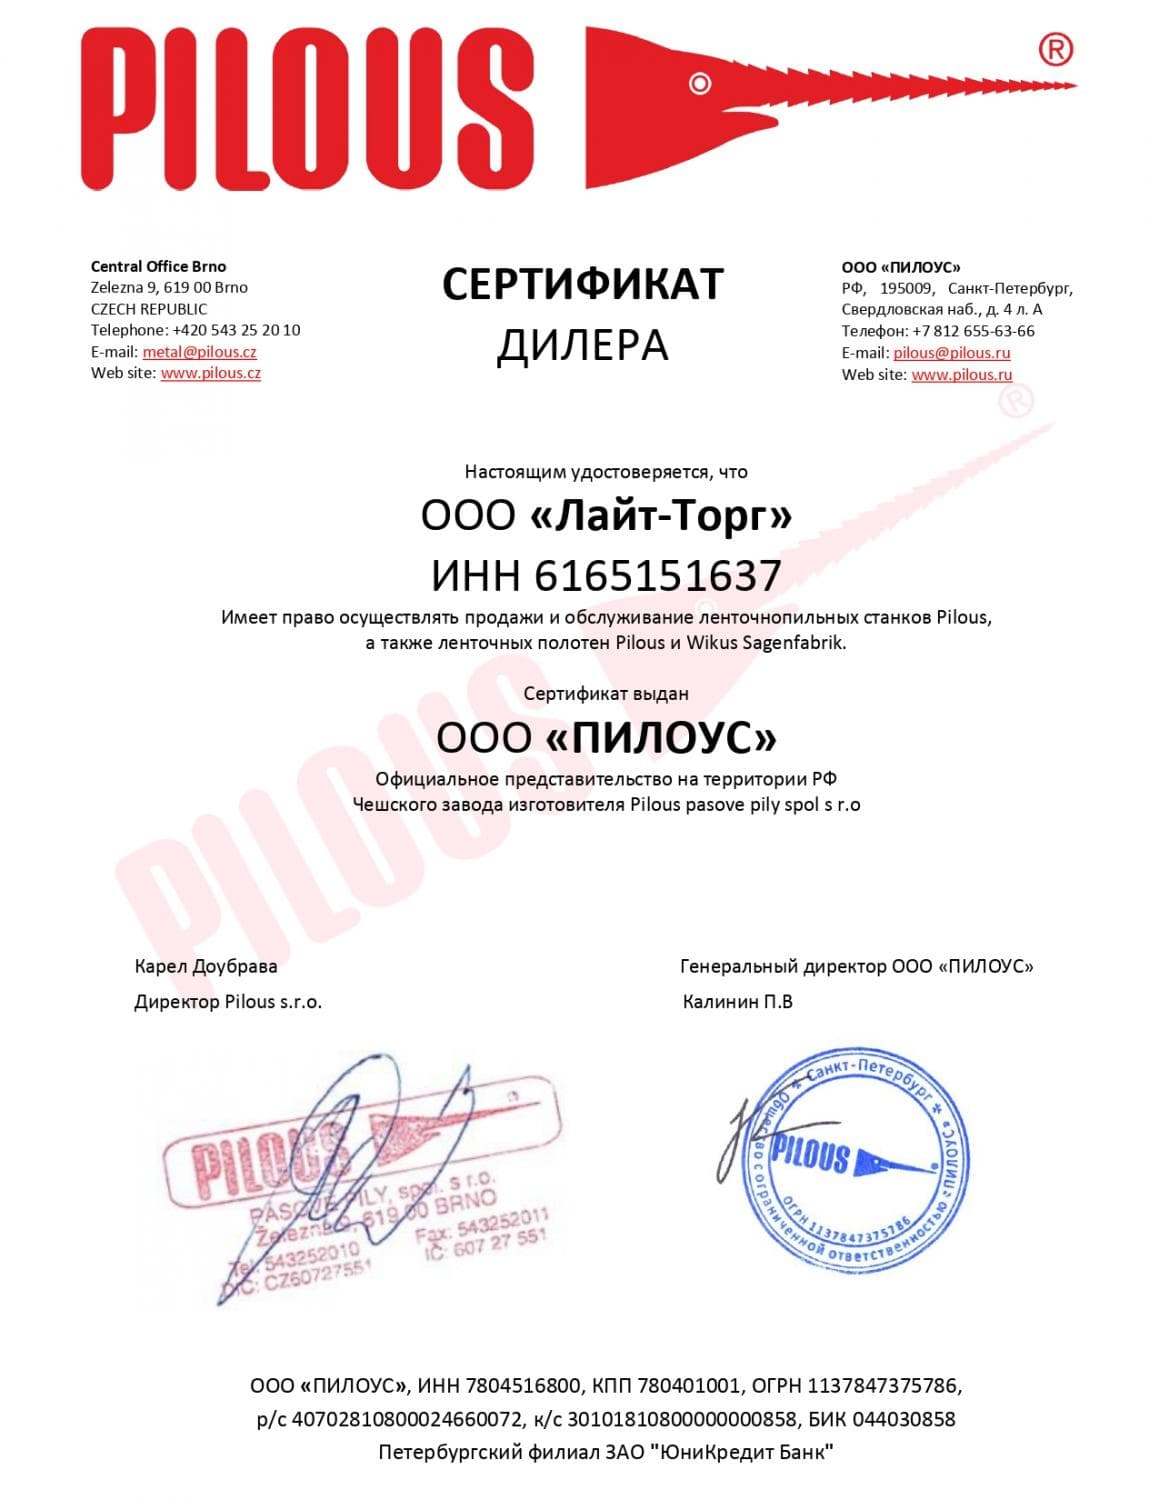 Сертификат дилера Pilous